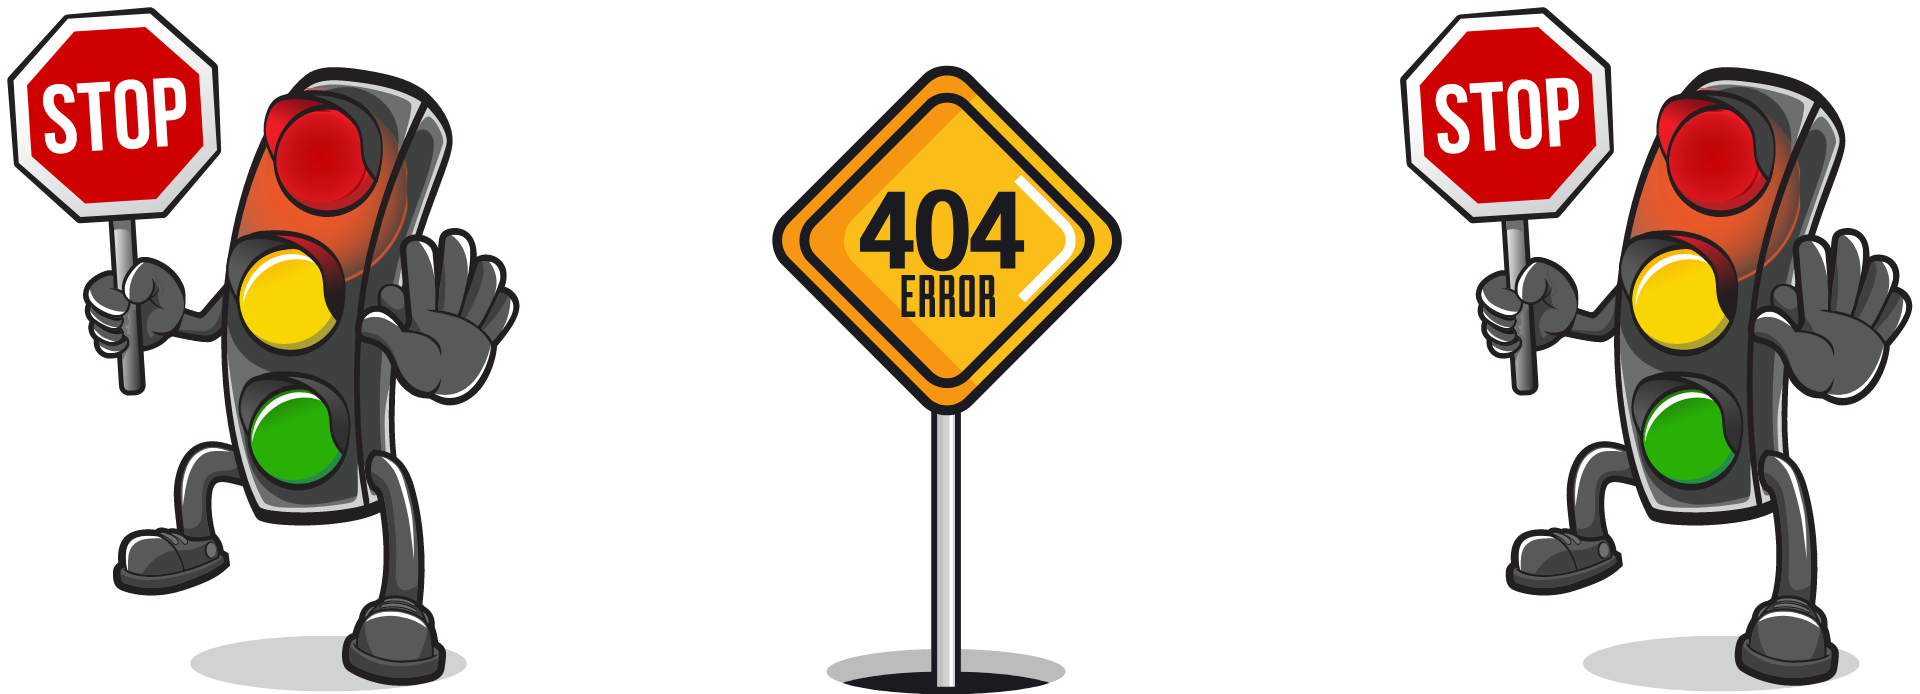 Error 404 Graphic